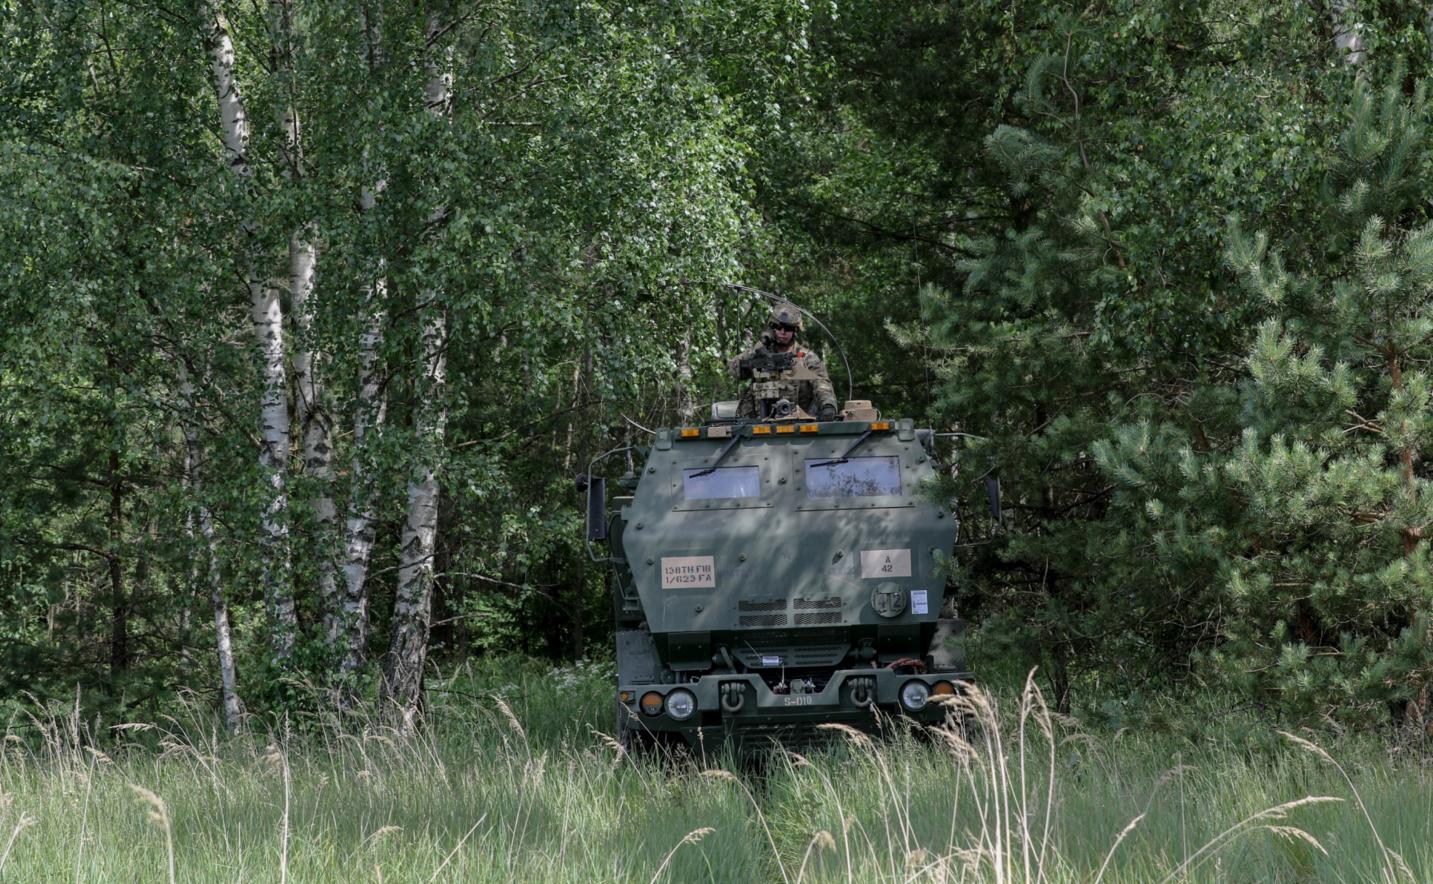 Пусковая установка HIMARS (High Mobility Artillery Rocket System) 1-го батальона 623-го полка полевой артиллерии Армии Национальной гвардии Кентукки в засаде в литовском лесу в районе Kazlu Ruda, фото сделано 10 июня 2018 года в период учения Saber Strike 18